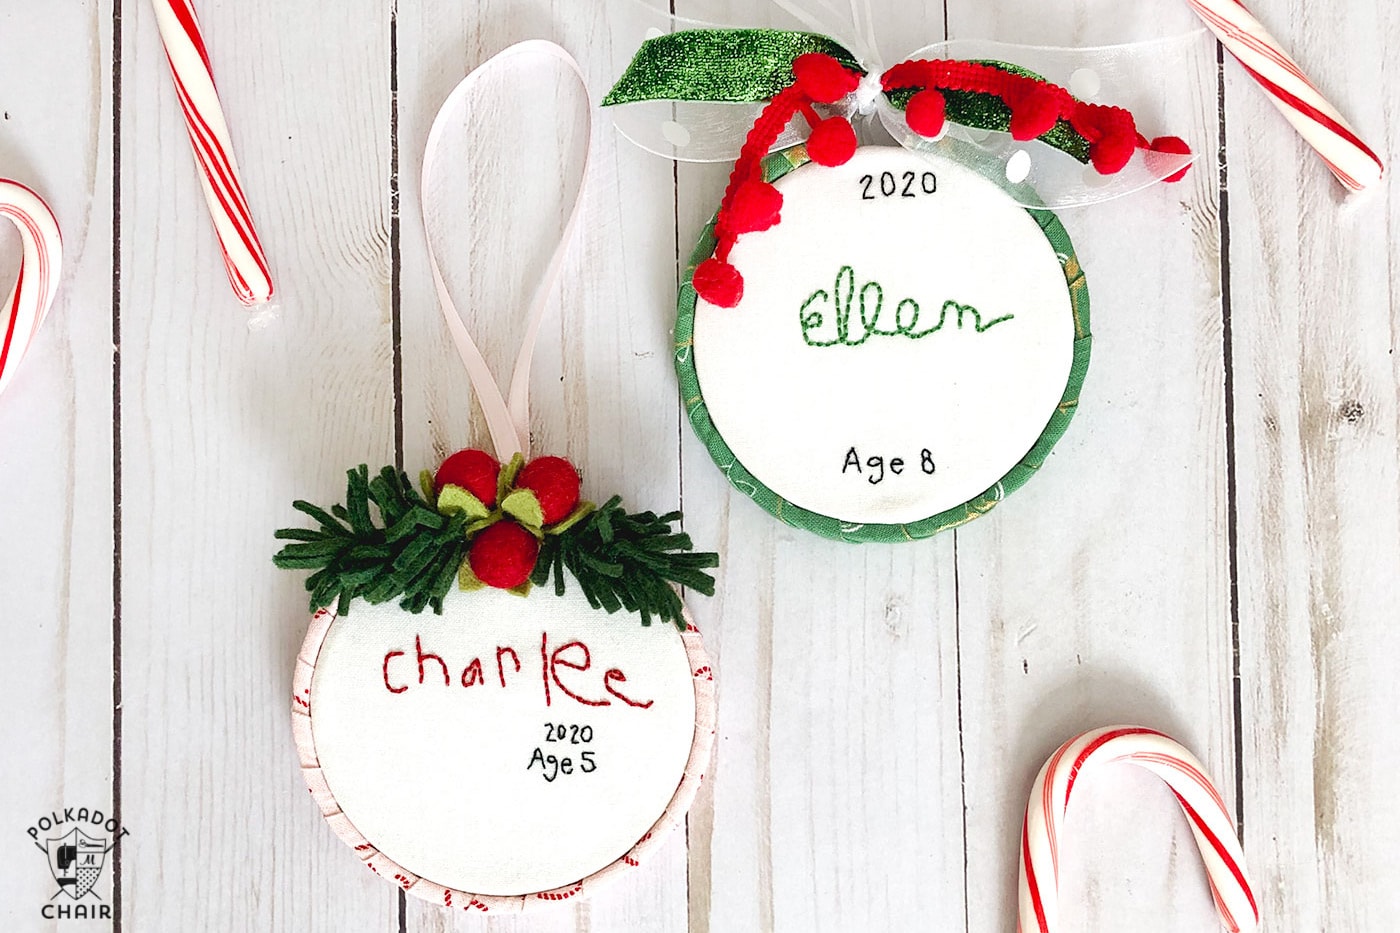 décorations de Noël brodées à la main avec des noms d'enfants sur une table en bois blanc